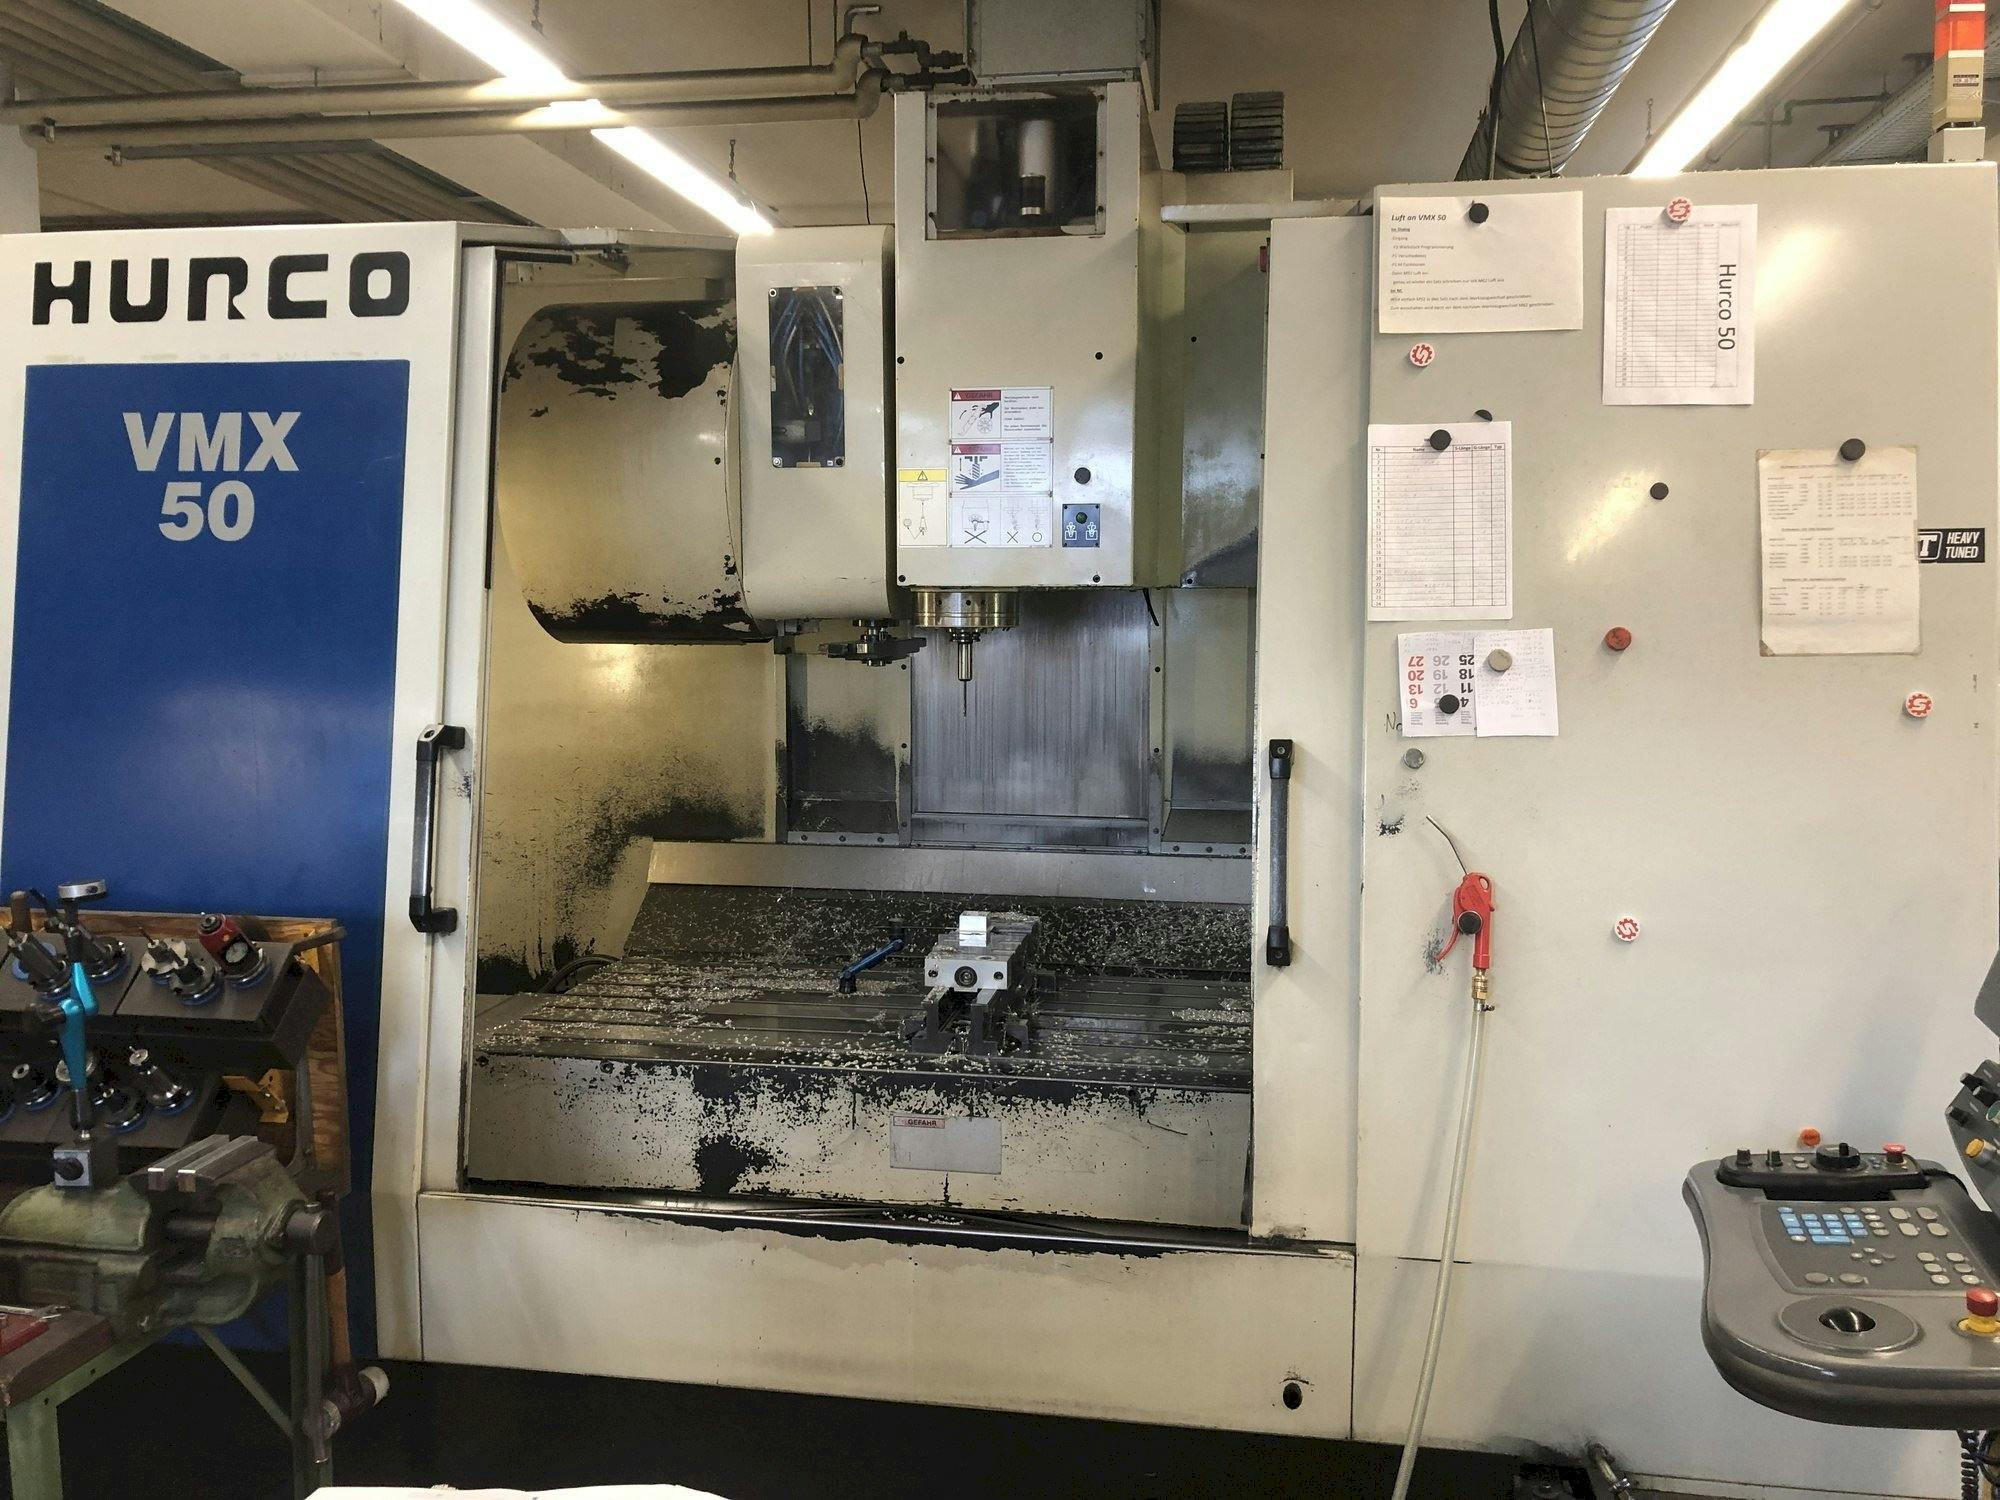 Vooraanzicht  van Hurco VMX 50  machine